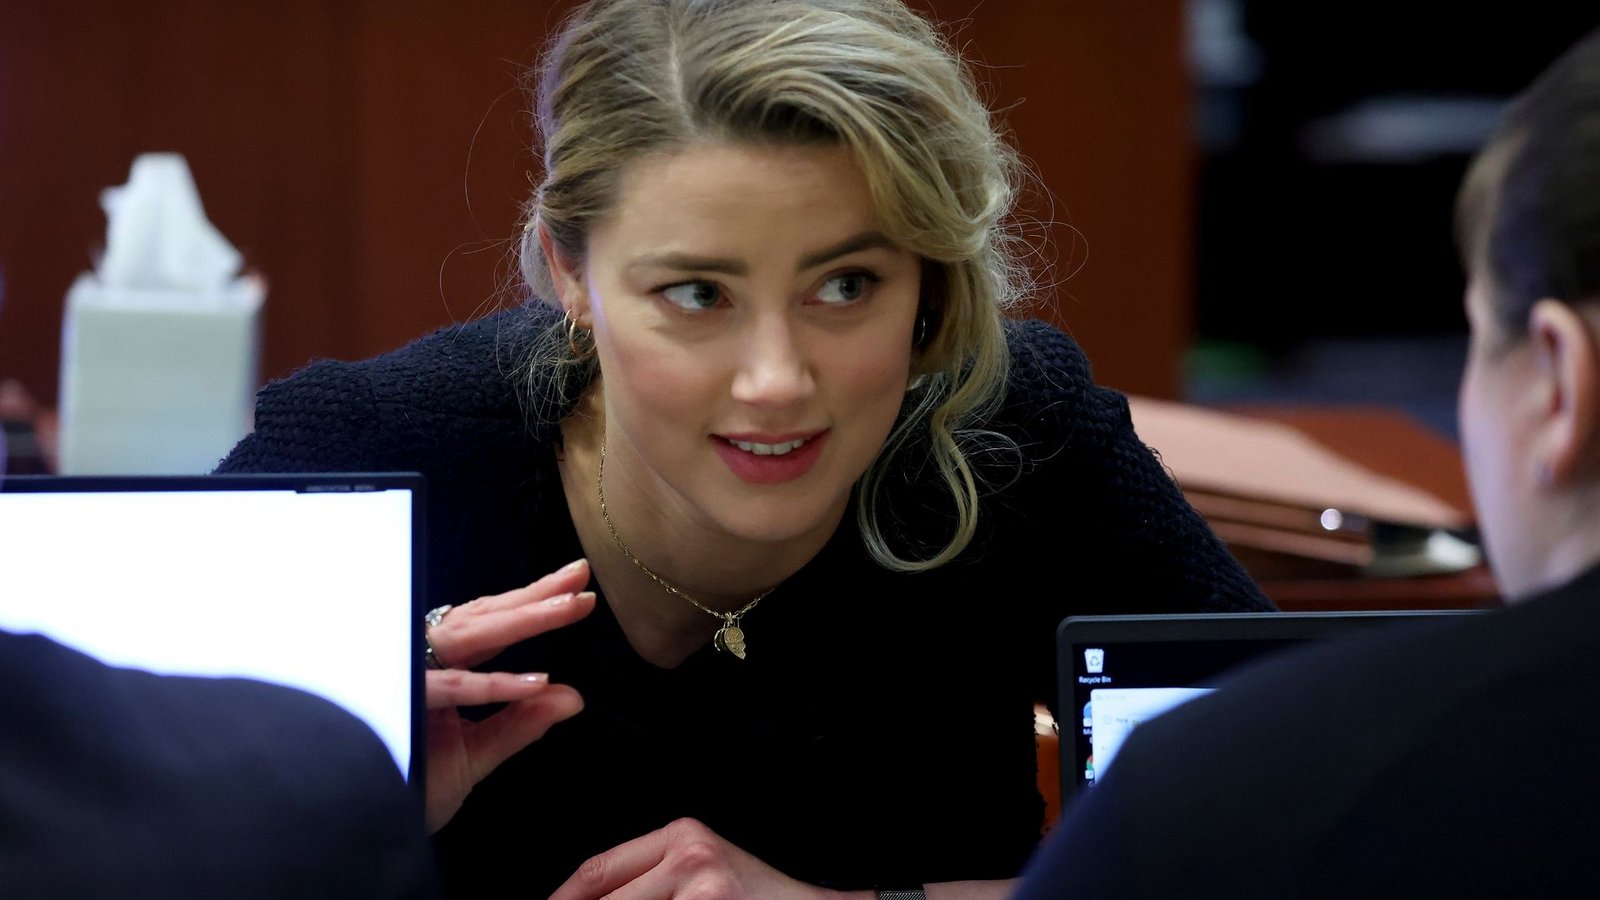 Die Schauspielerin Amber Heard bespricht sich mit ihrem Anwaltsteam.Foto: Michael Reynolds/EPA Pool/AP/dpa